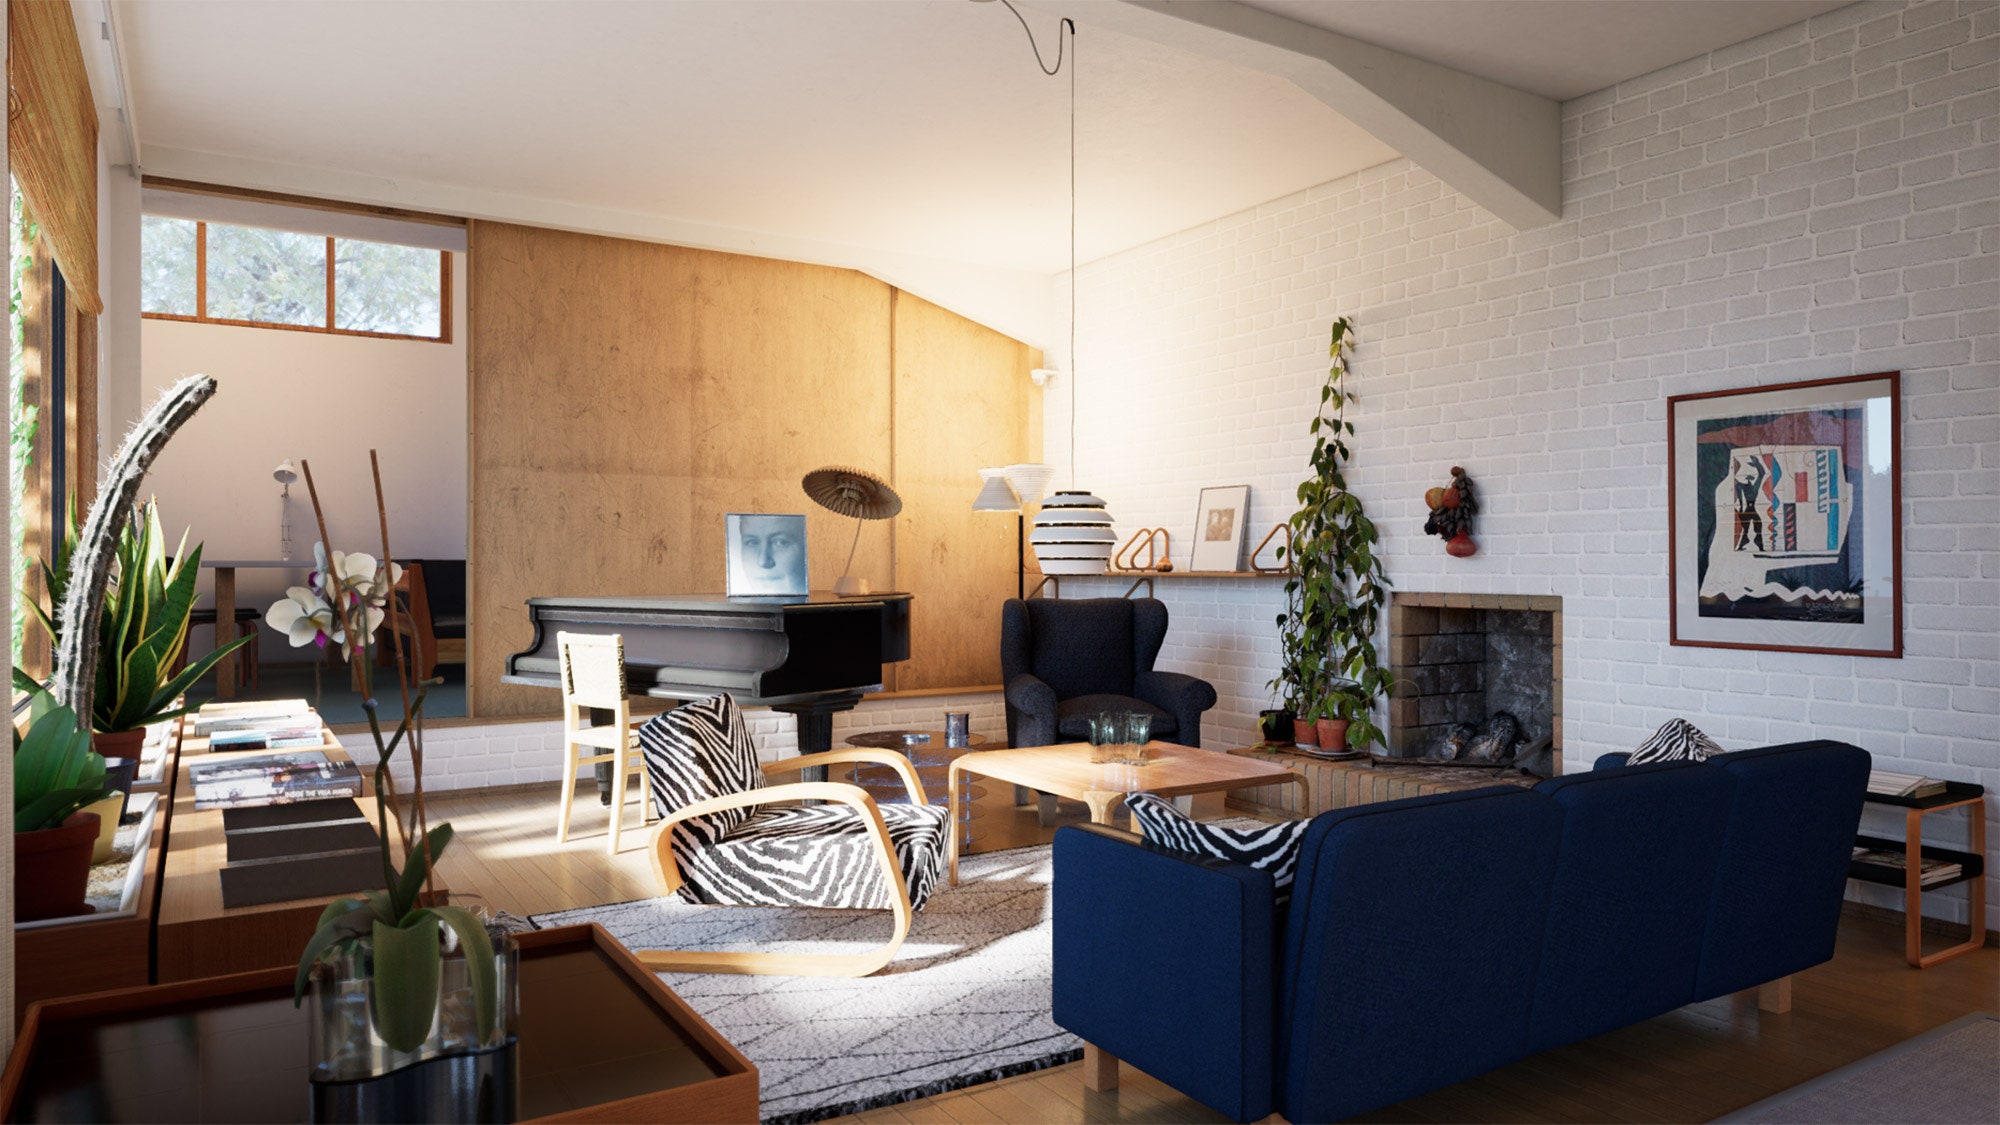 Дом Алвара Аалто виртуальный тур по дому архитектора в Хельсинки